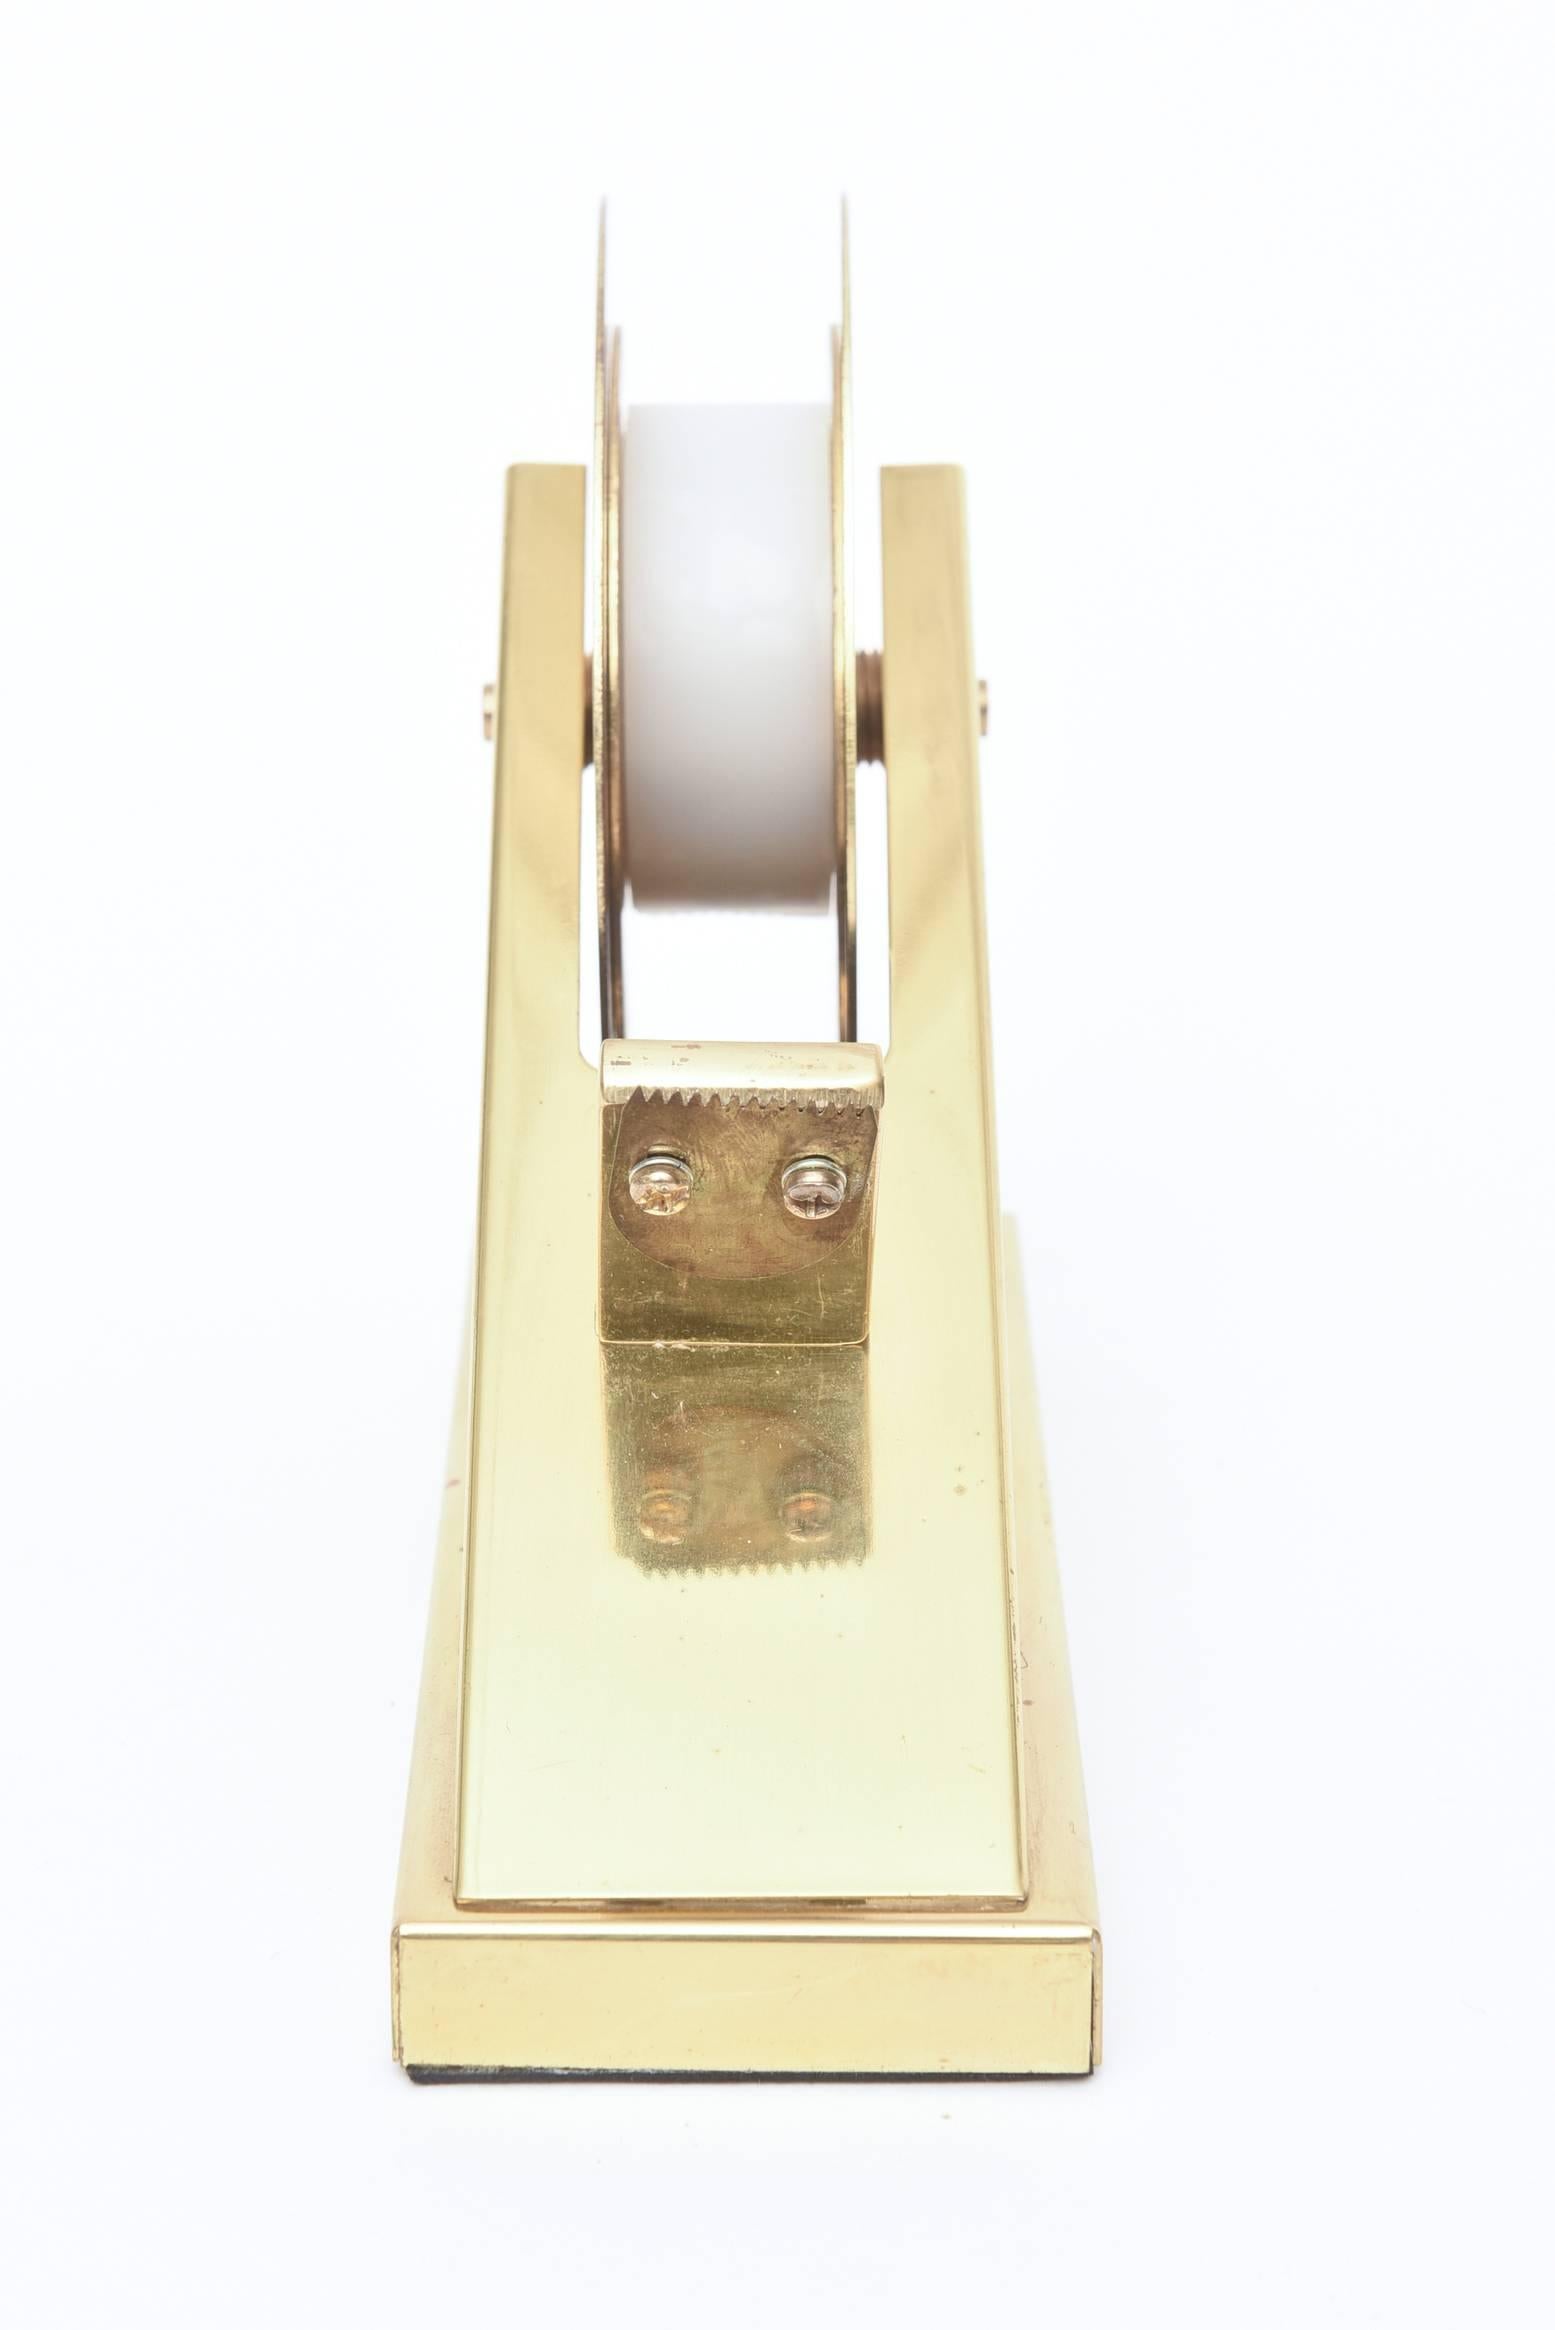 Sculptural Brass Tape Dispenser or Tape Holder Modernist For Sale 1